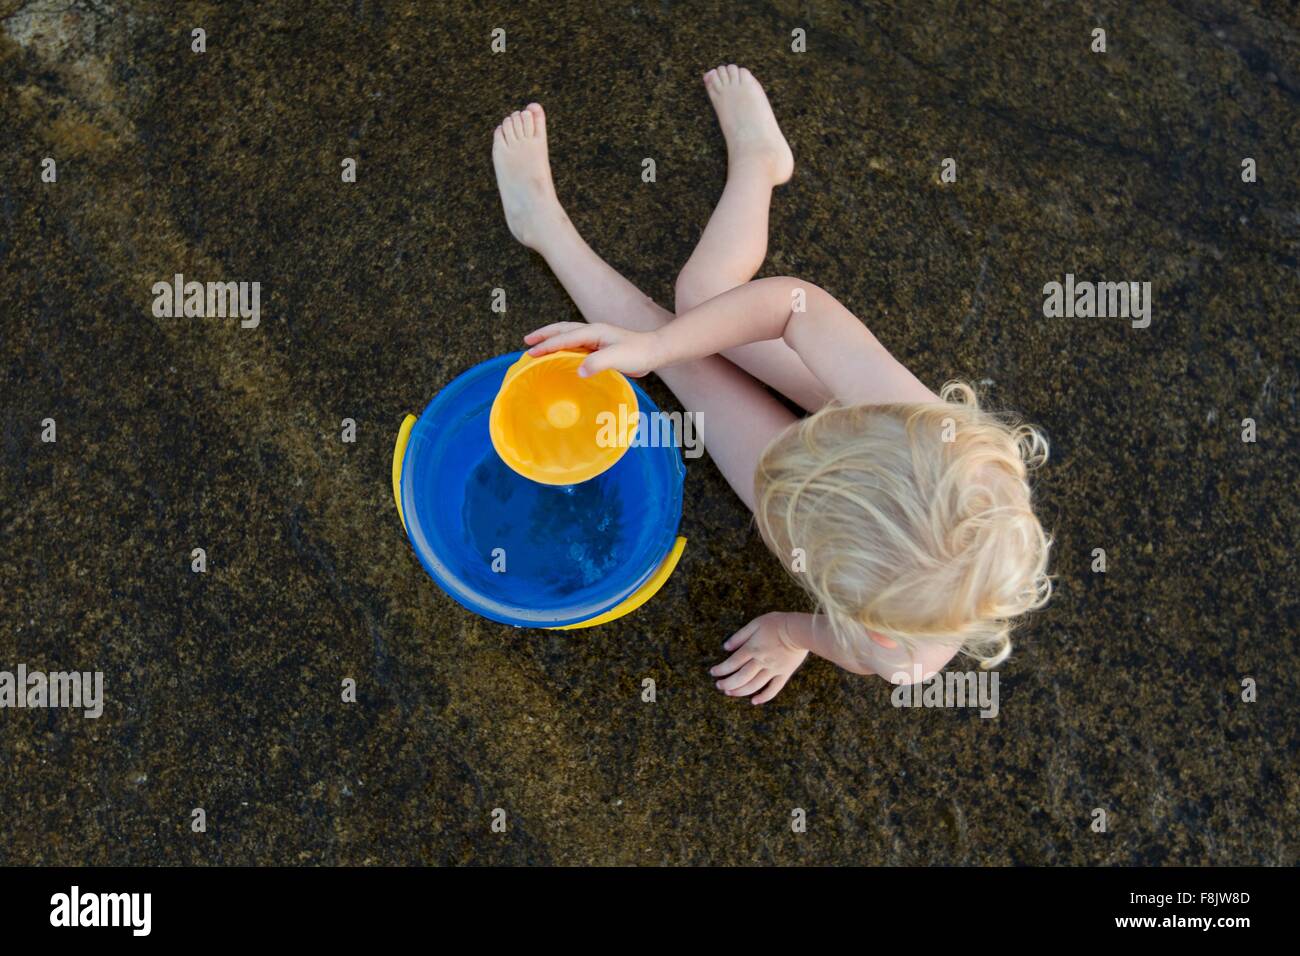 Draufsicht der weiblichen Kleinkind spielen im Sand mit Spielzeug Eimer Stockfoto